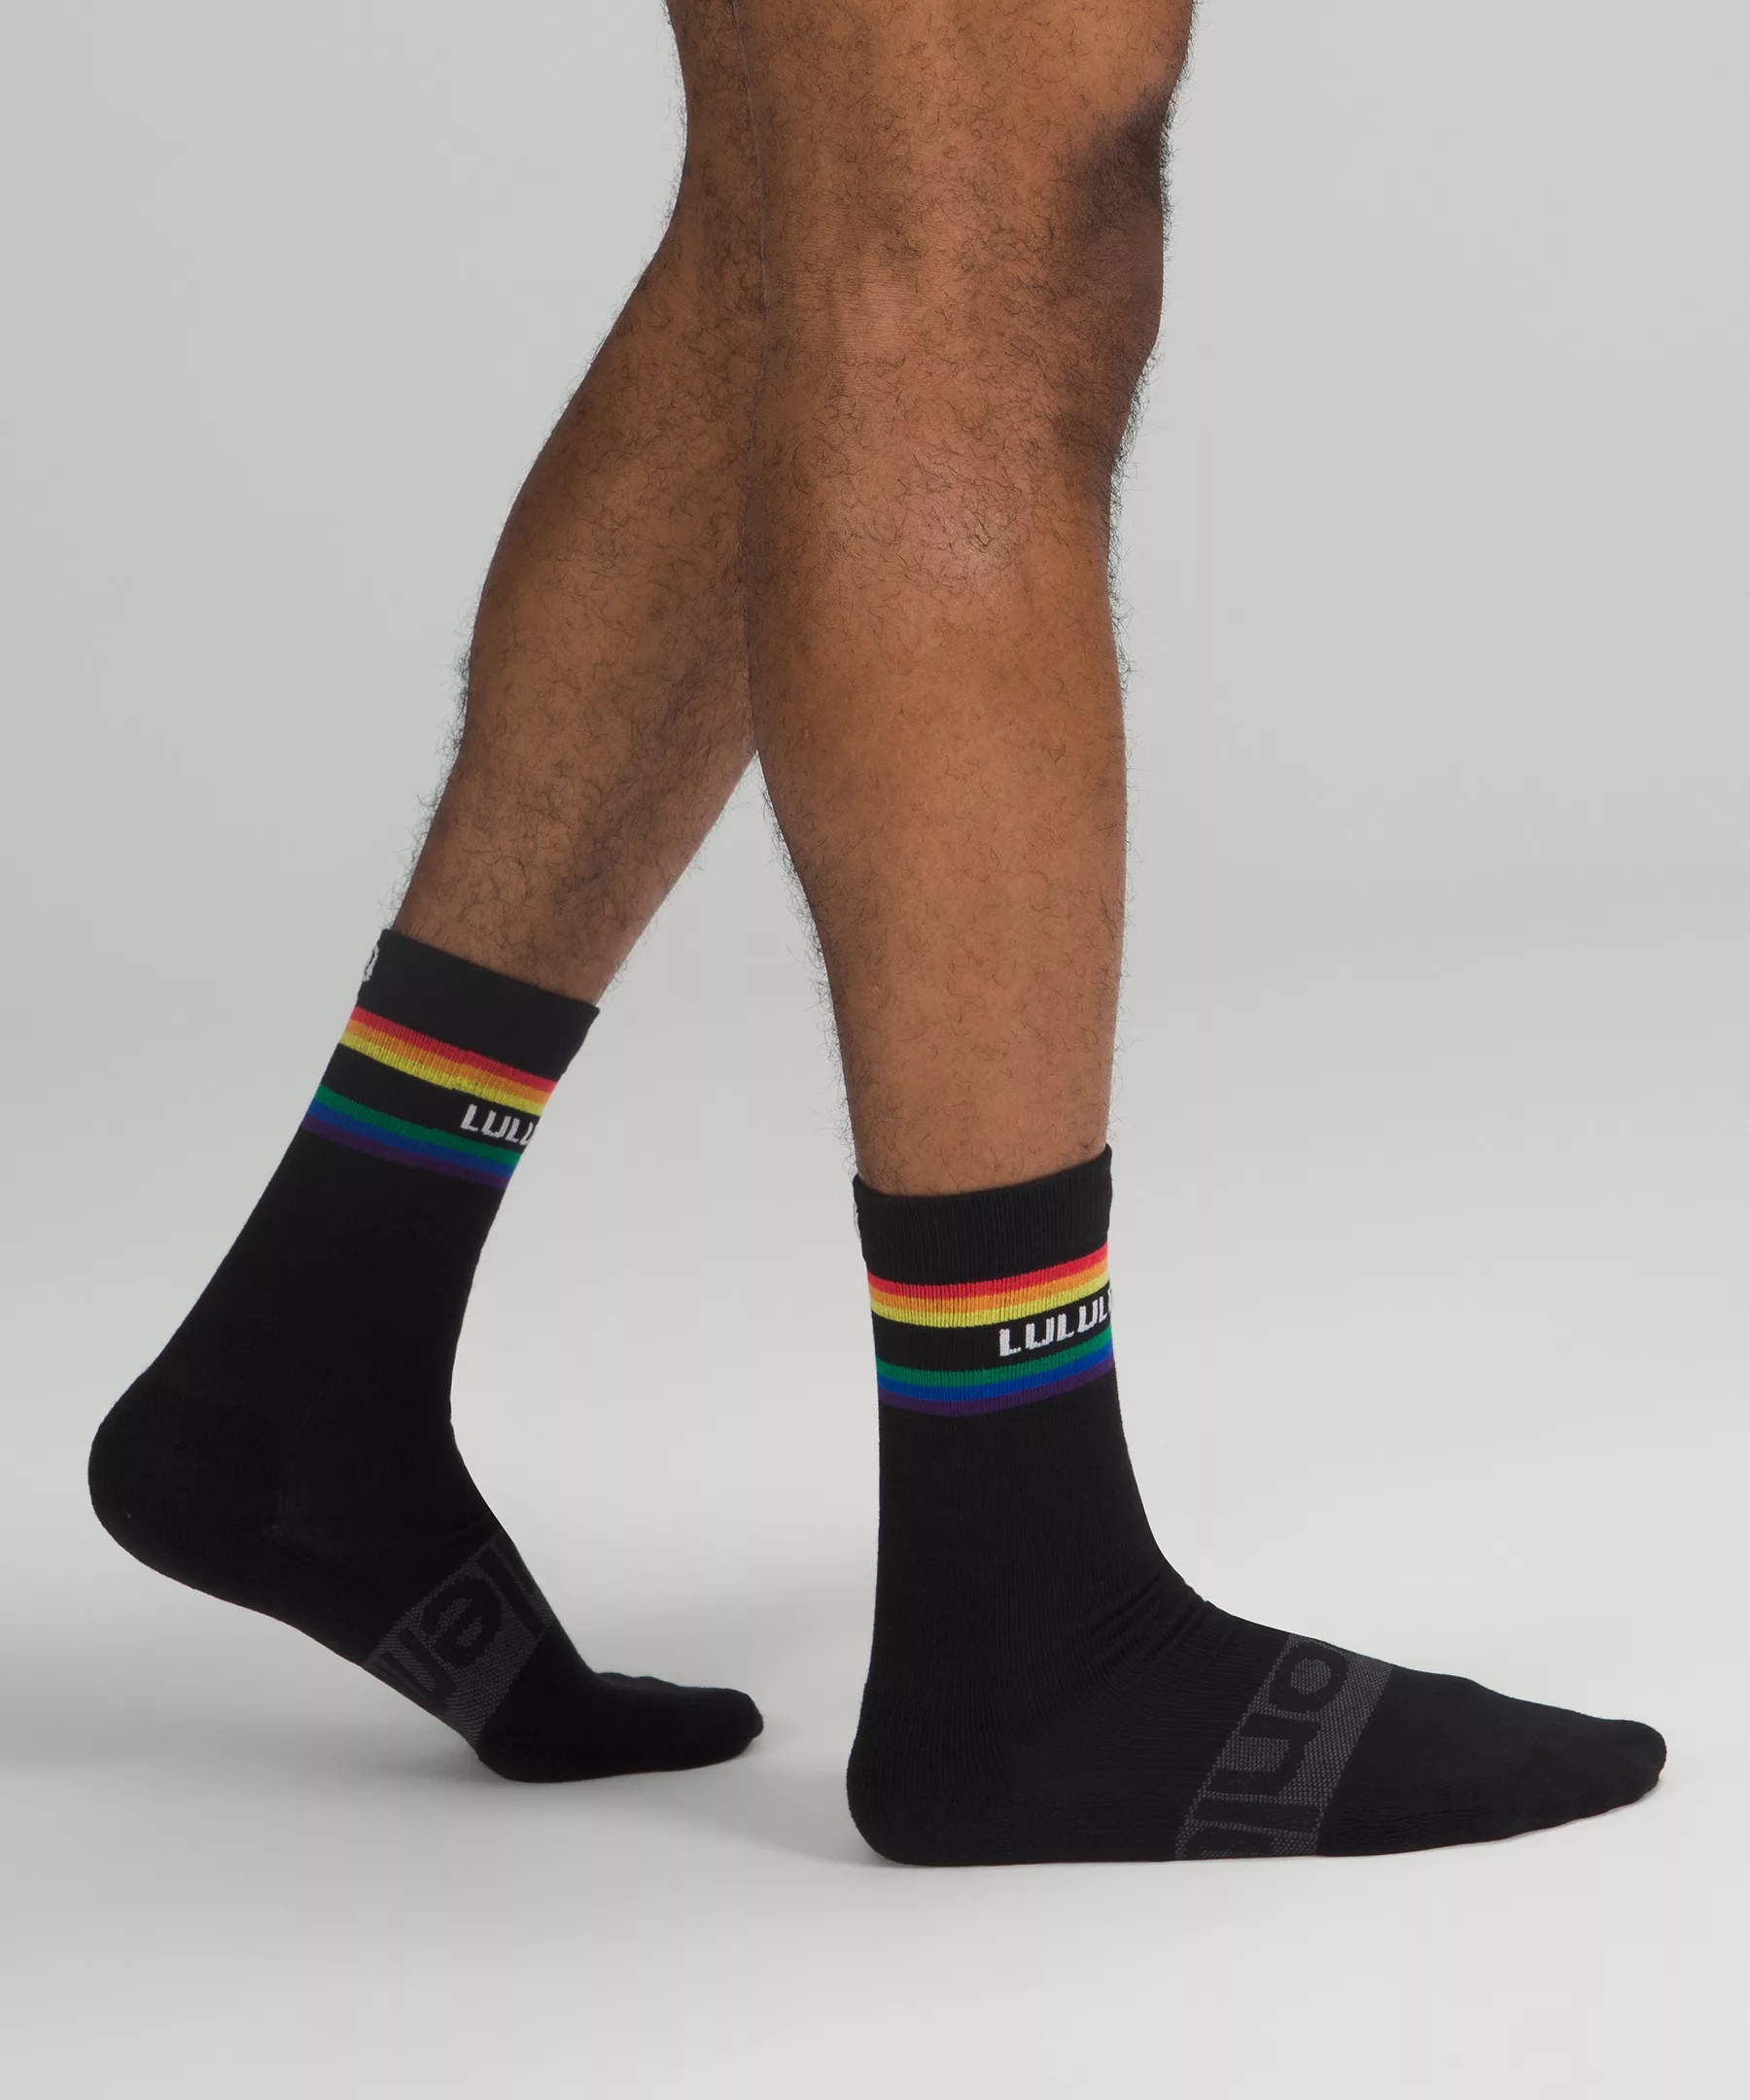 Men's Daily Stride Crew Socks Stripe lululemon *Wordmark - 2